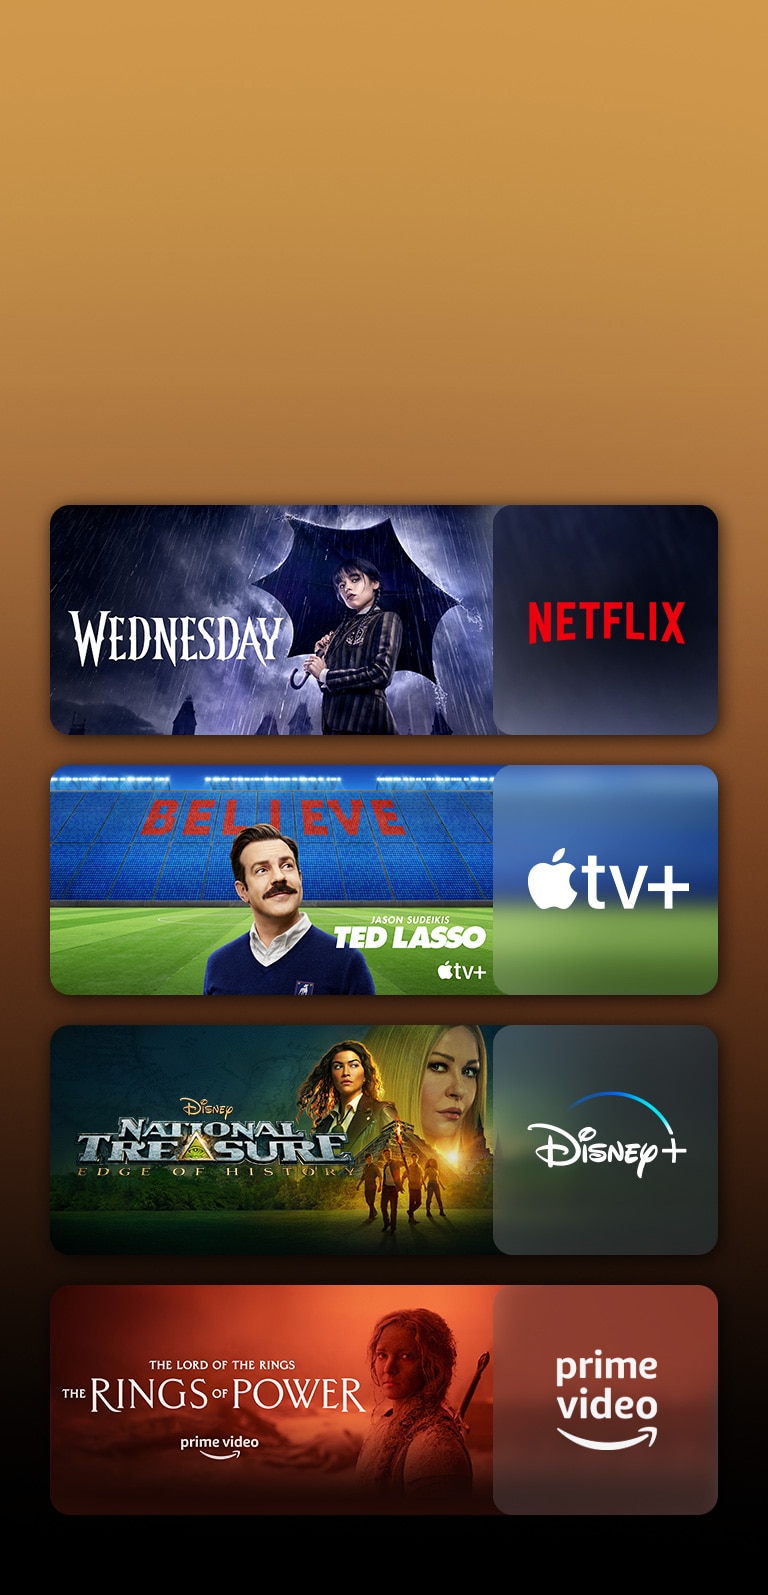 Hay logotipos de plataformas de servicios de transmisión y secuencias coincidentes justo al lado de cada logotipo. Hay imágenes de Wednesday de Netflix y TED LASSO de Apple TV.